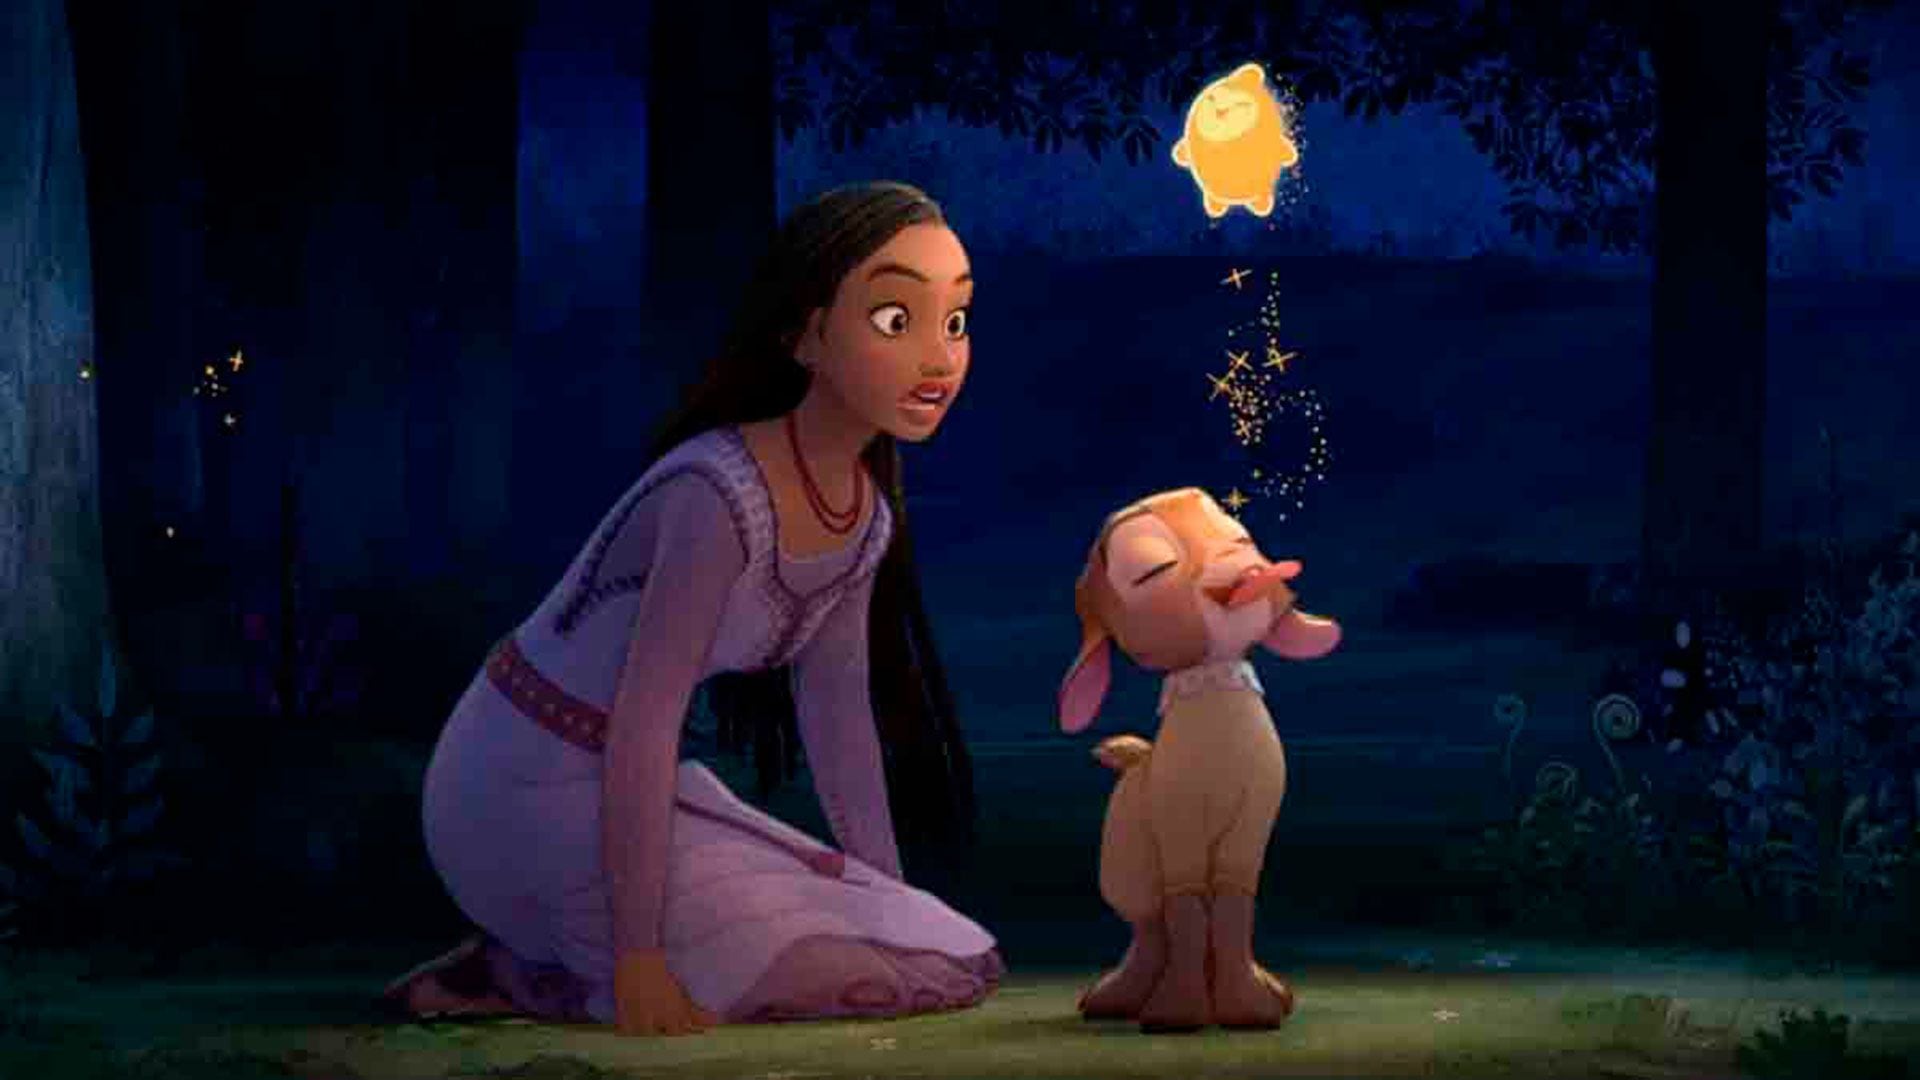 En TikTok, el tráiler de "Wish: el poder de los deseos" se convirtió en el clip más visto de Disney. (Créditos: Disney)